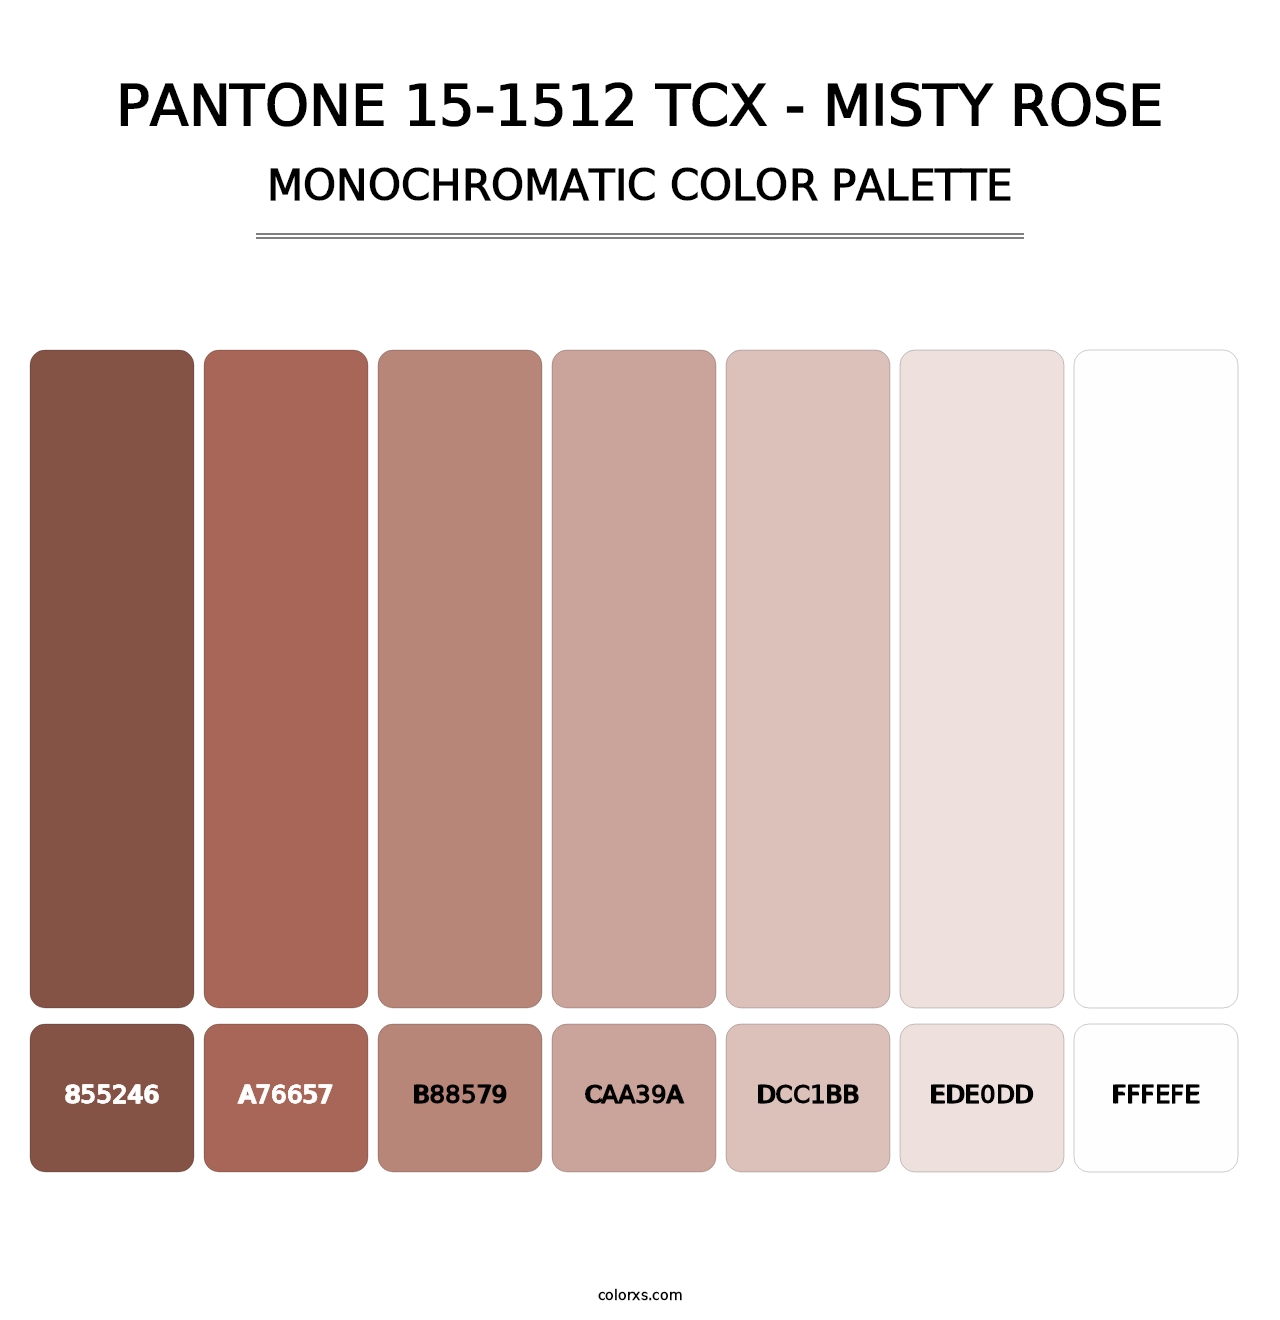 PANTONE 15-1512 TCX - Misty Rose - Monochromatic Color Palette